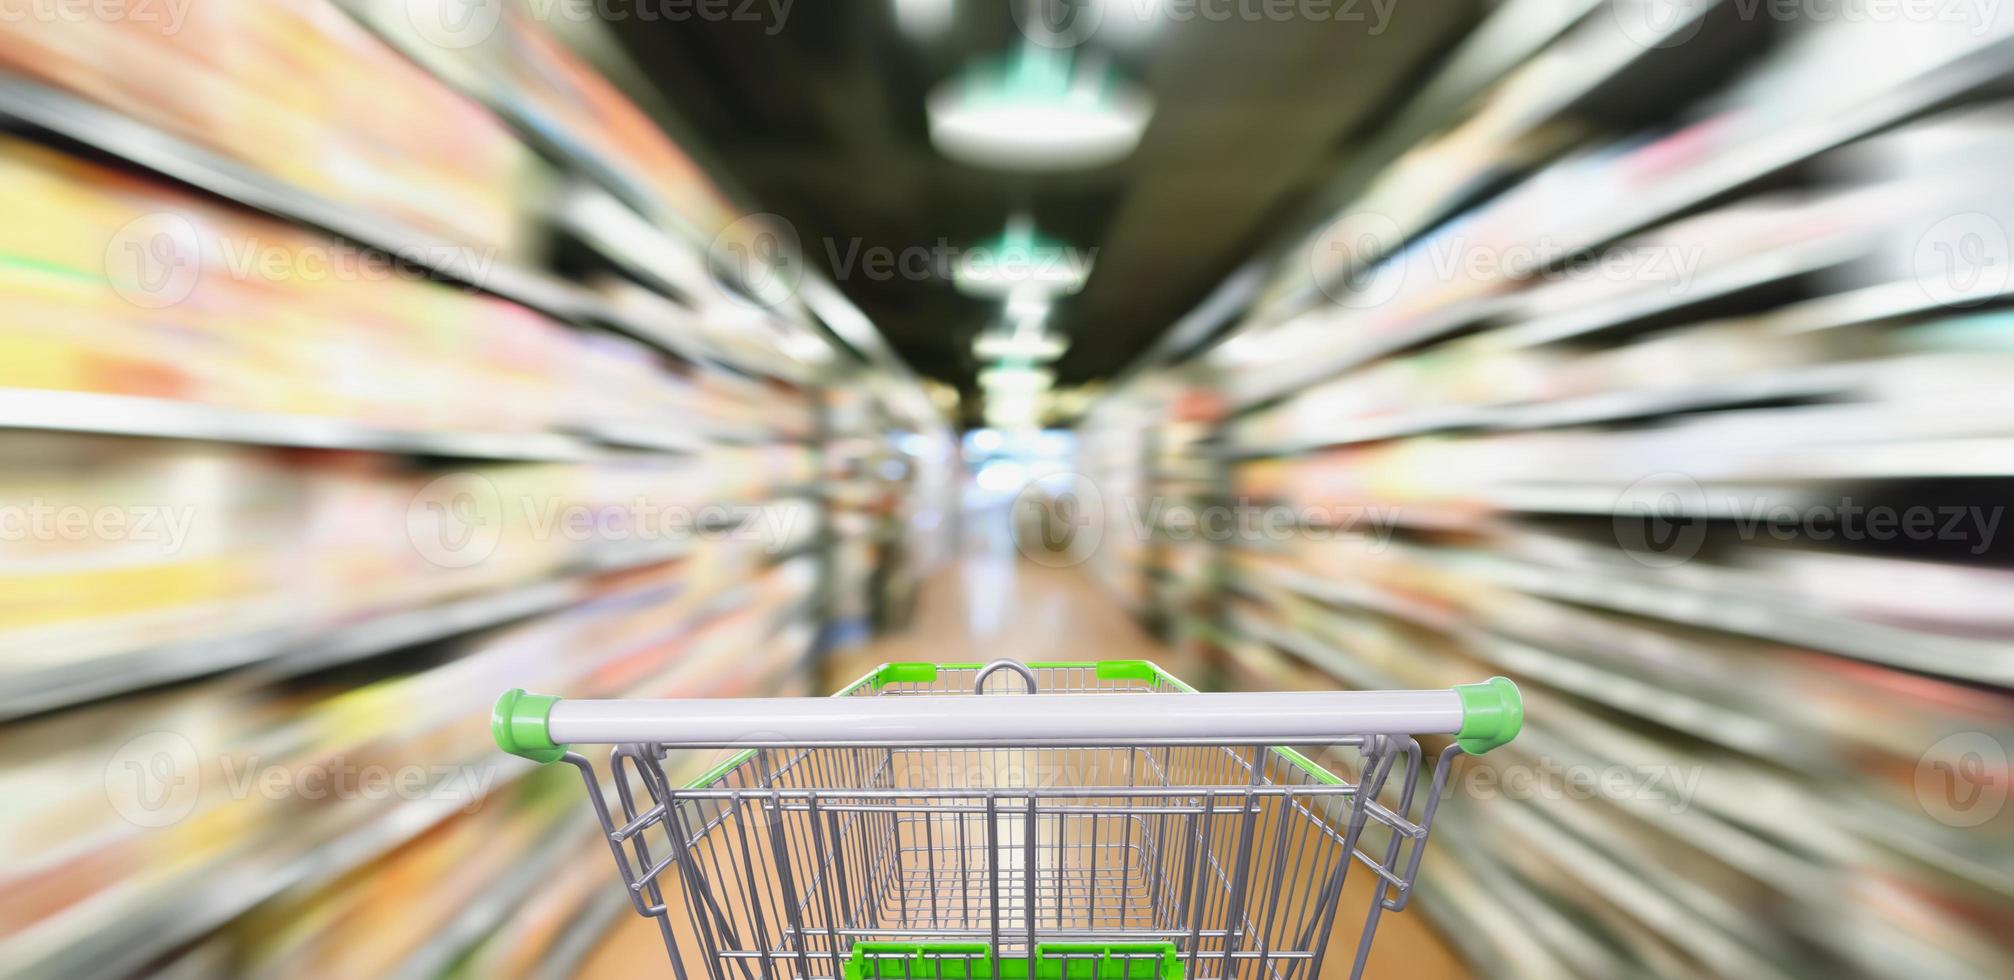 corredor de supermercado e prateleiras de produtos borrão de movimento abstrato com carrinho de compras foto